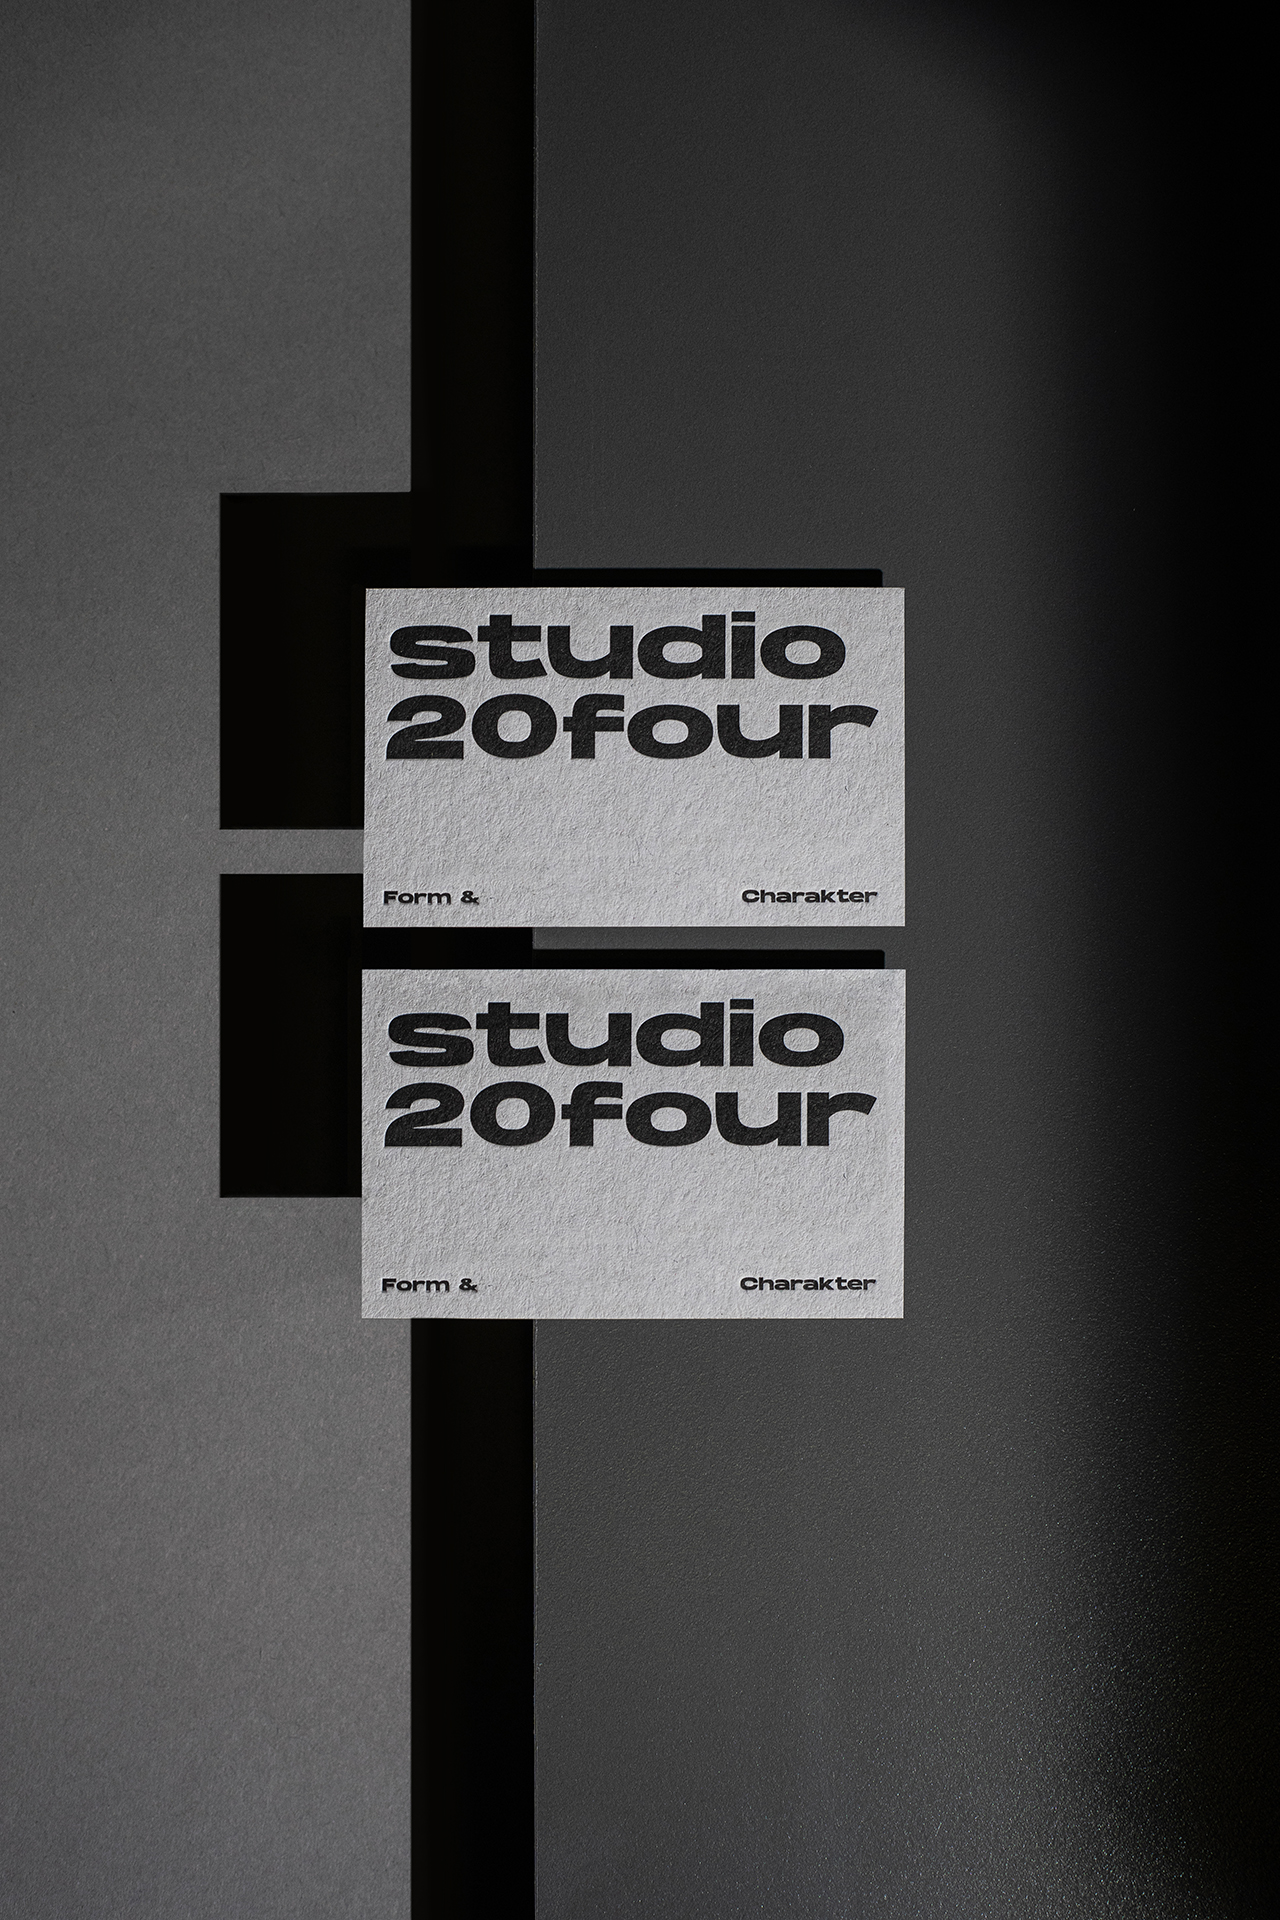 Studio 20four